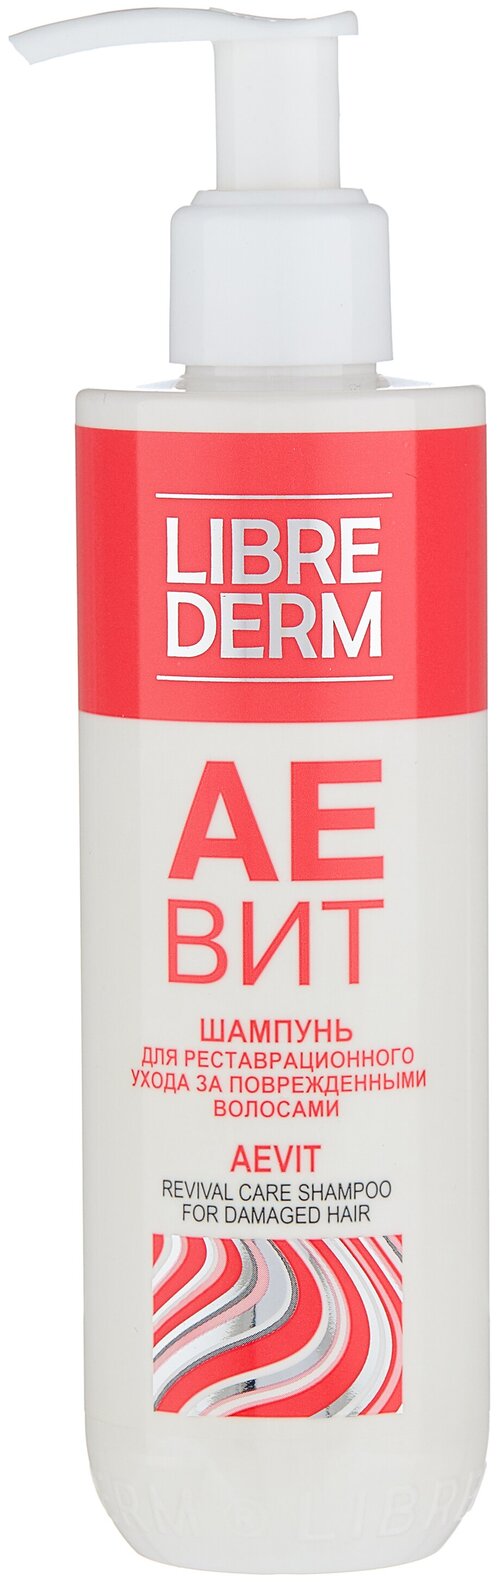 Librederm шампунь Аевит для реставрационного ухода за поврежденными волосами, 250 мл